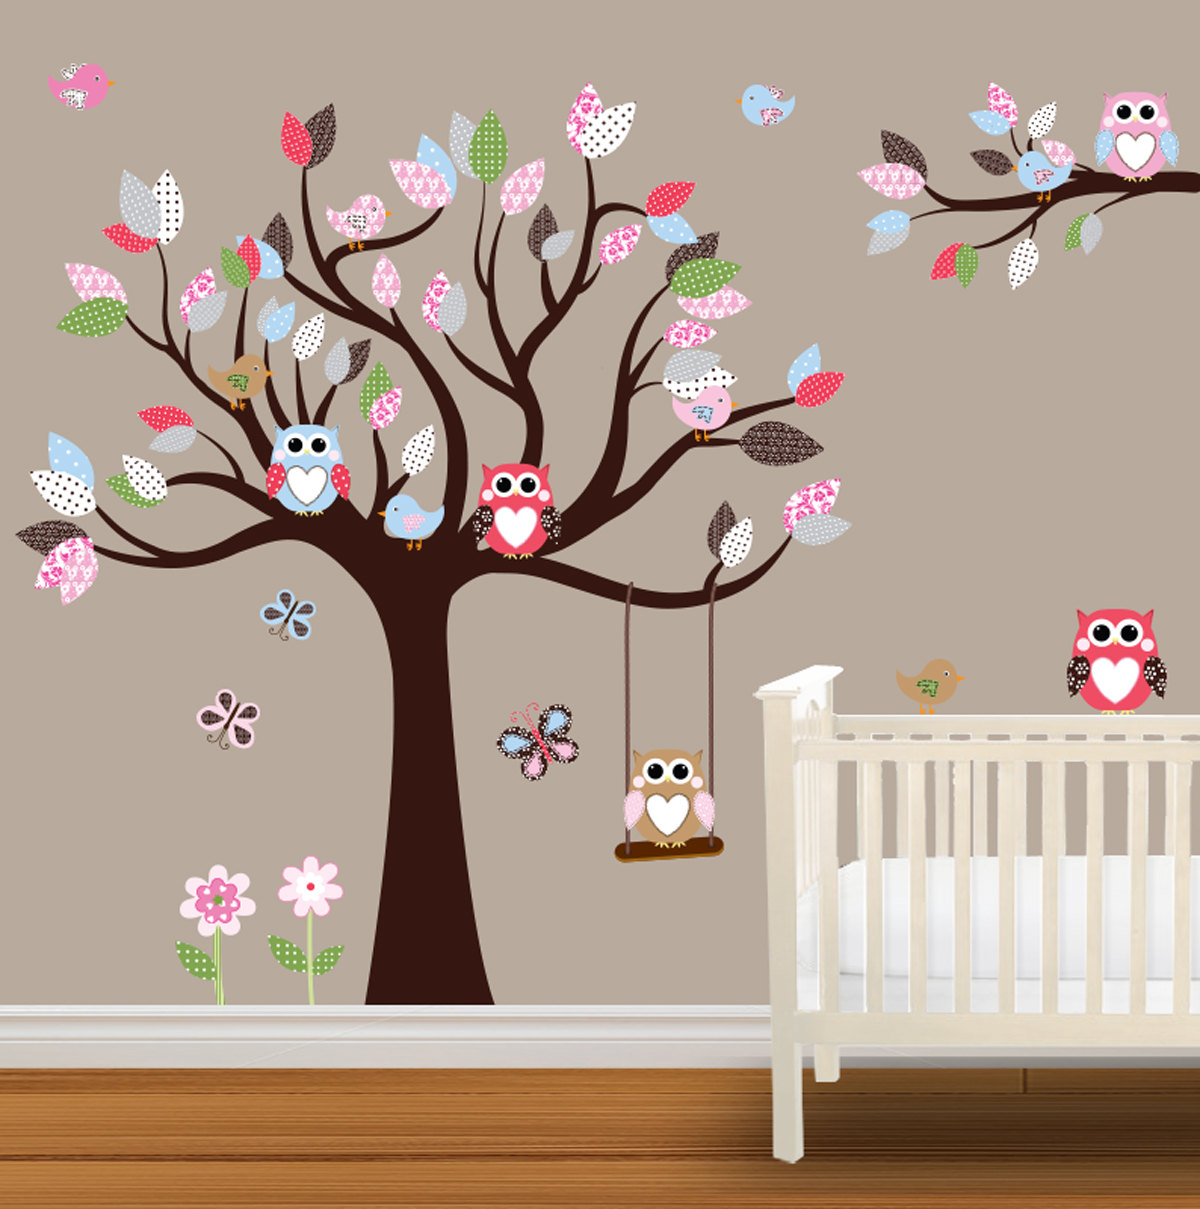 Baby Nursery Wallpaper Sticker Tree Nice Outstanding Kids Wall